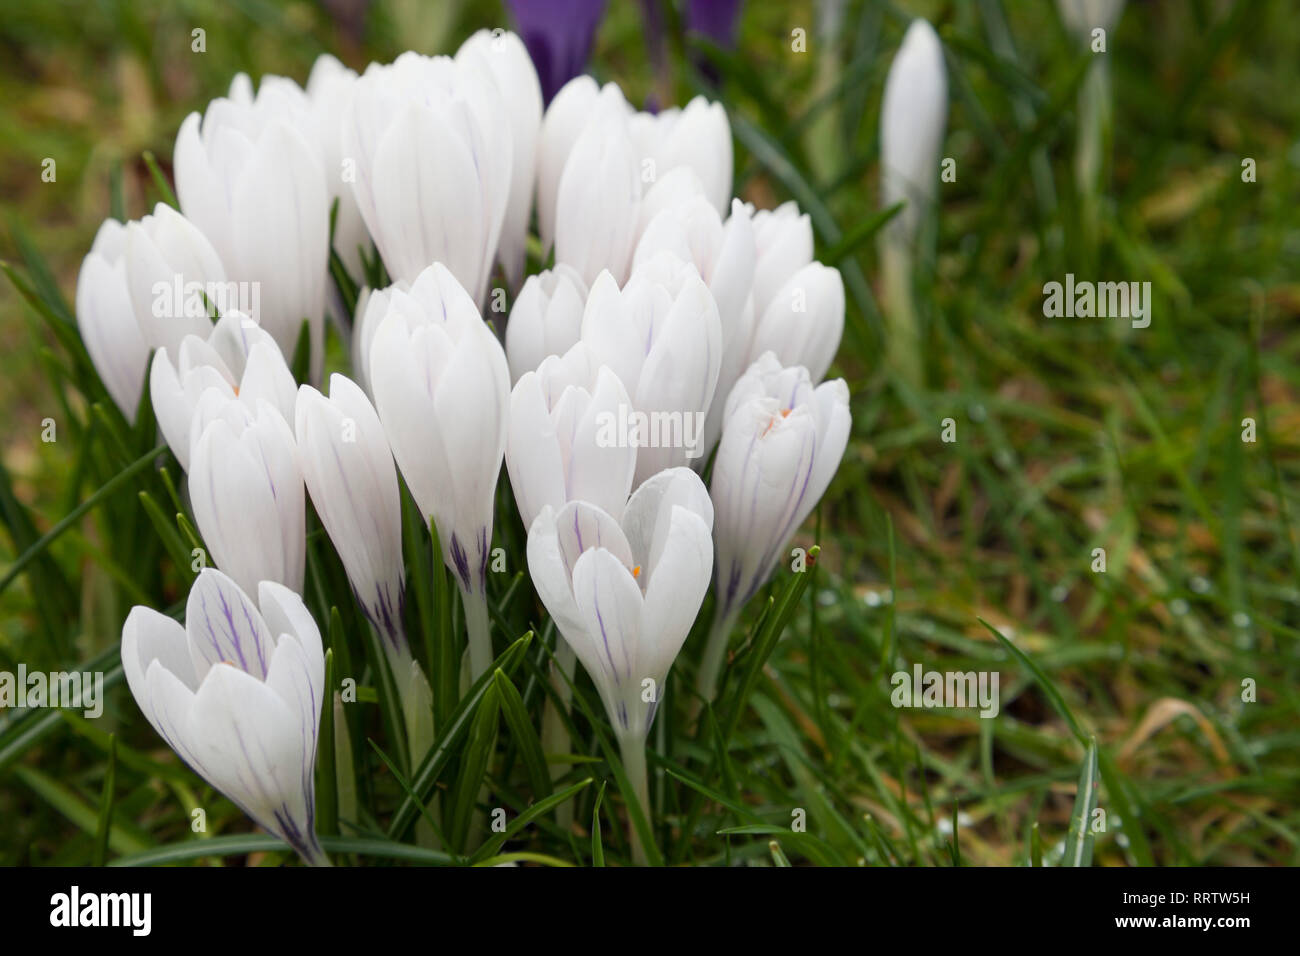 Crocus blanc à fleurs qui poussent à travers l'herbe sur une pelouse Banque D'Images